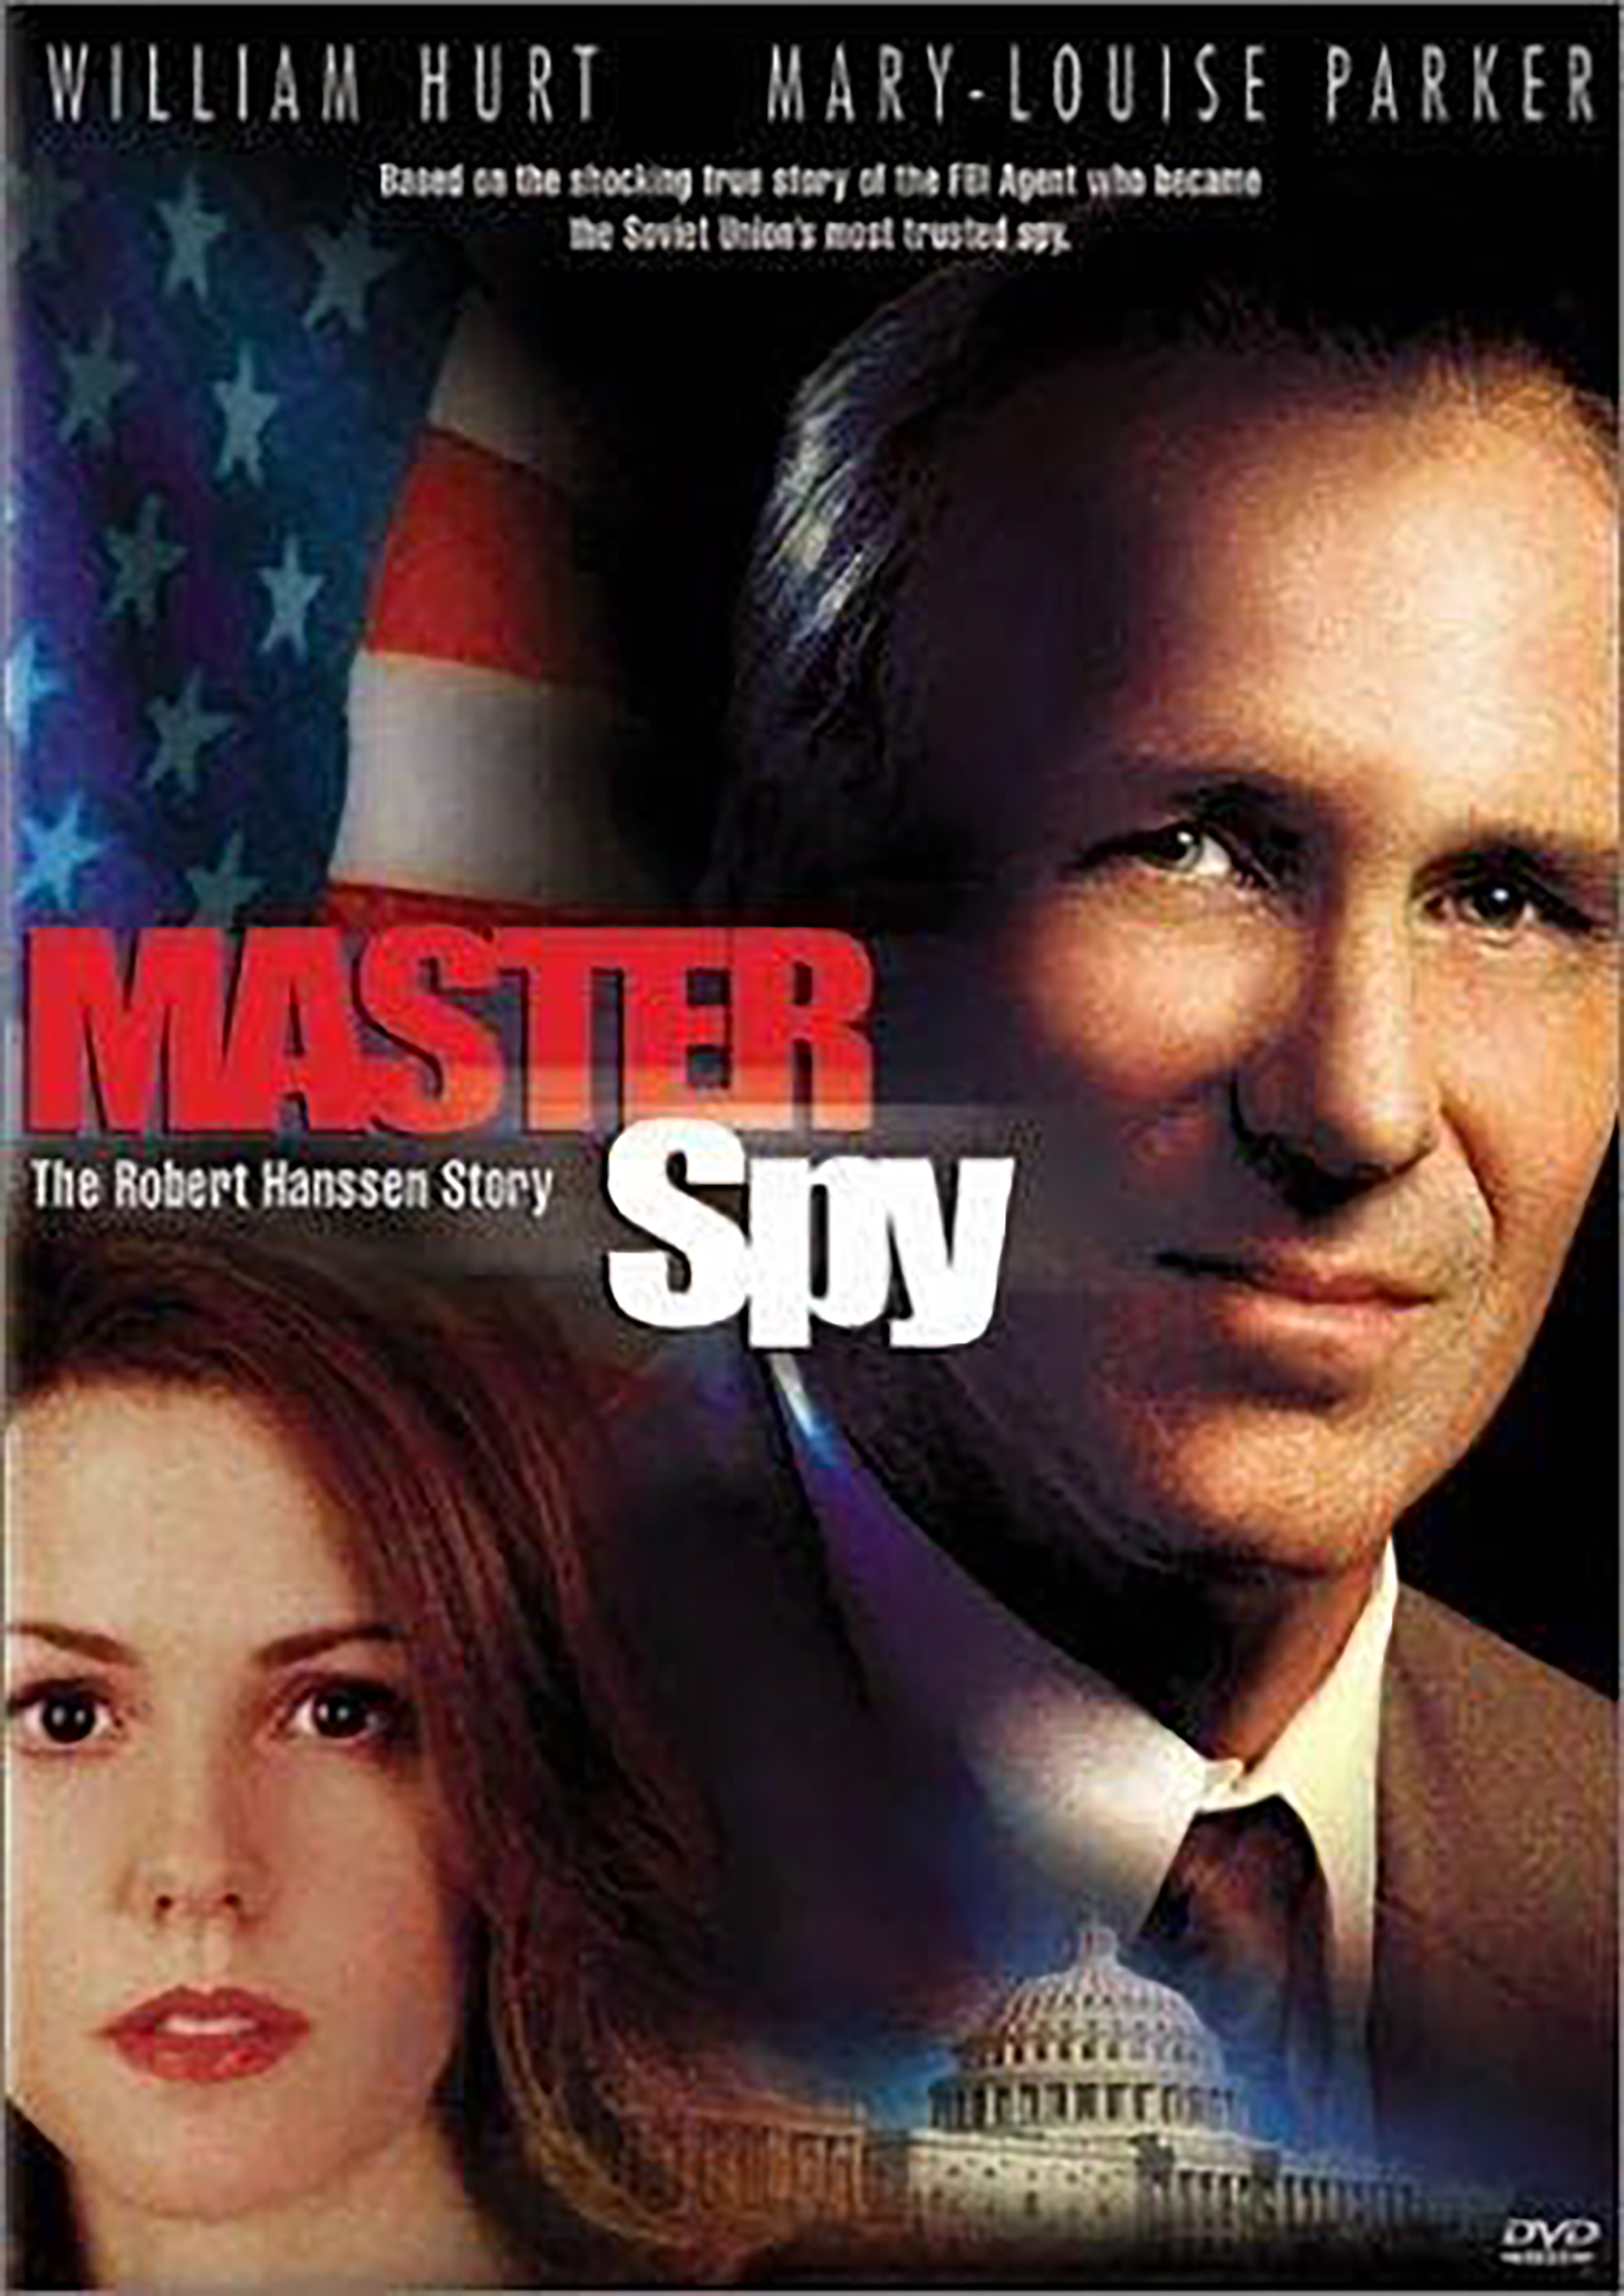 El afiche de Master Spy, la película sobre su vida que interpretó William Hurt. Los carceleros le permitieron verla a Hanssen, pero no pudo terminarla porque, dijo, tenía muchas inexactitudes